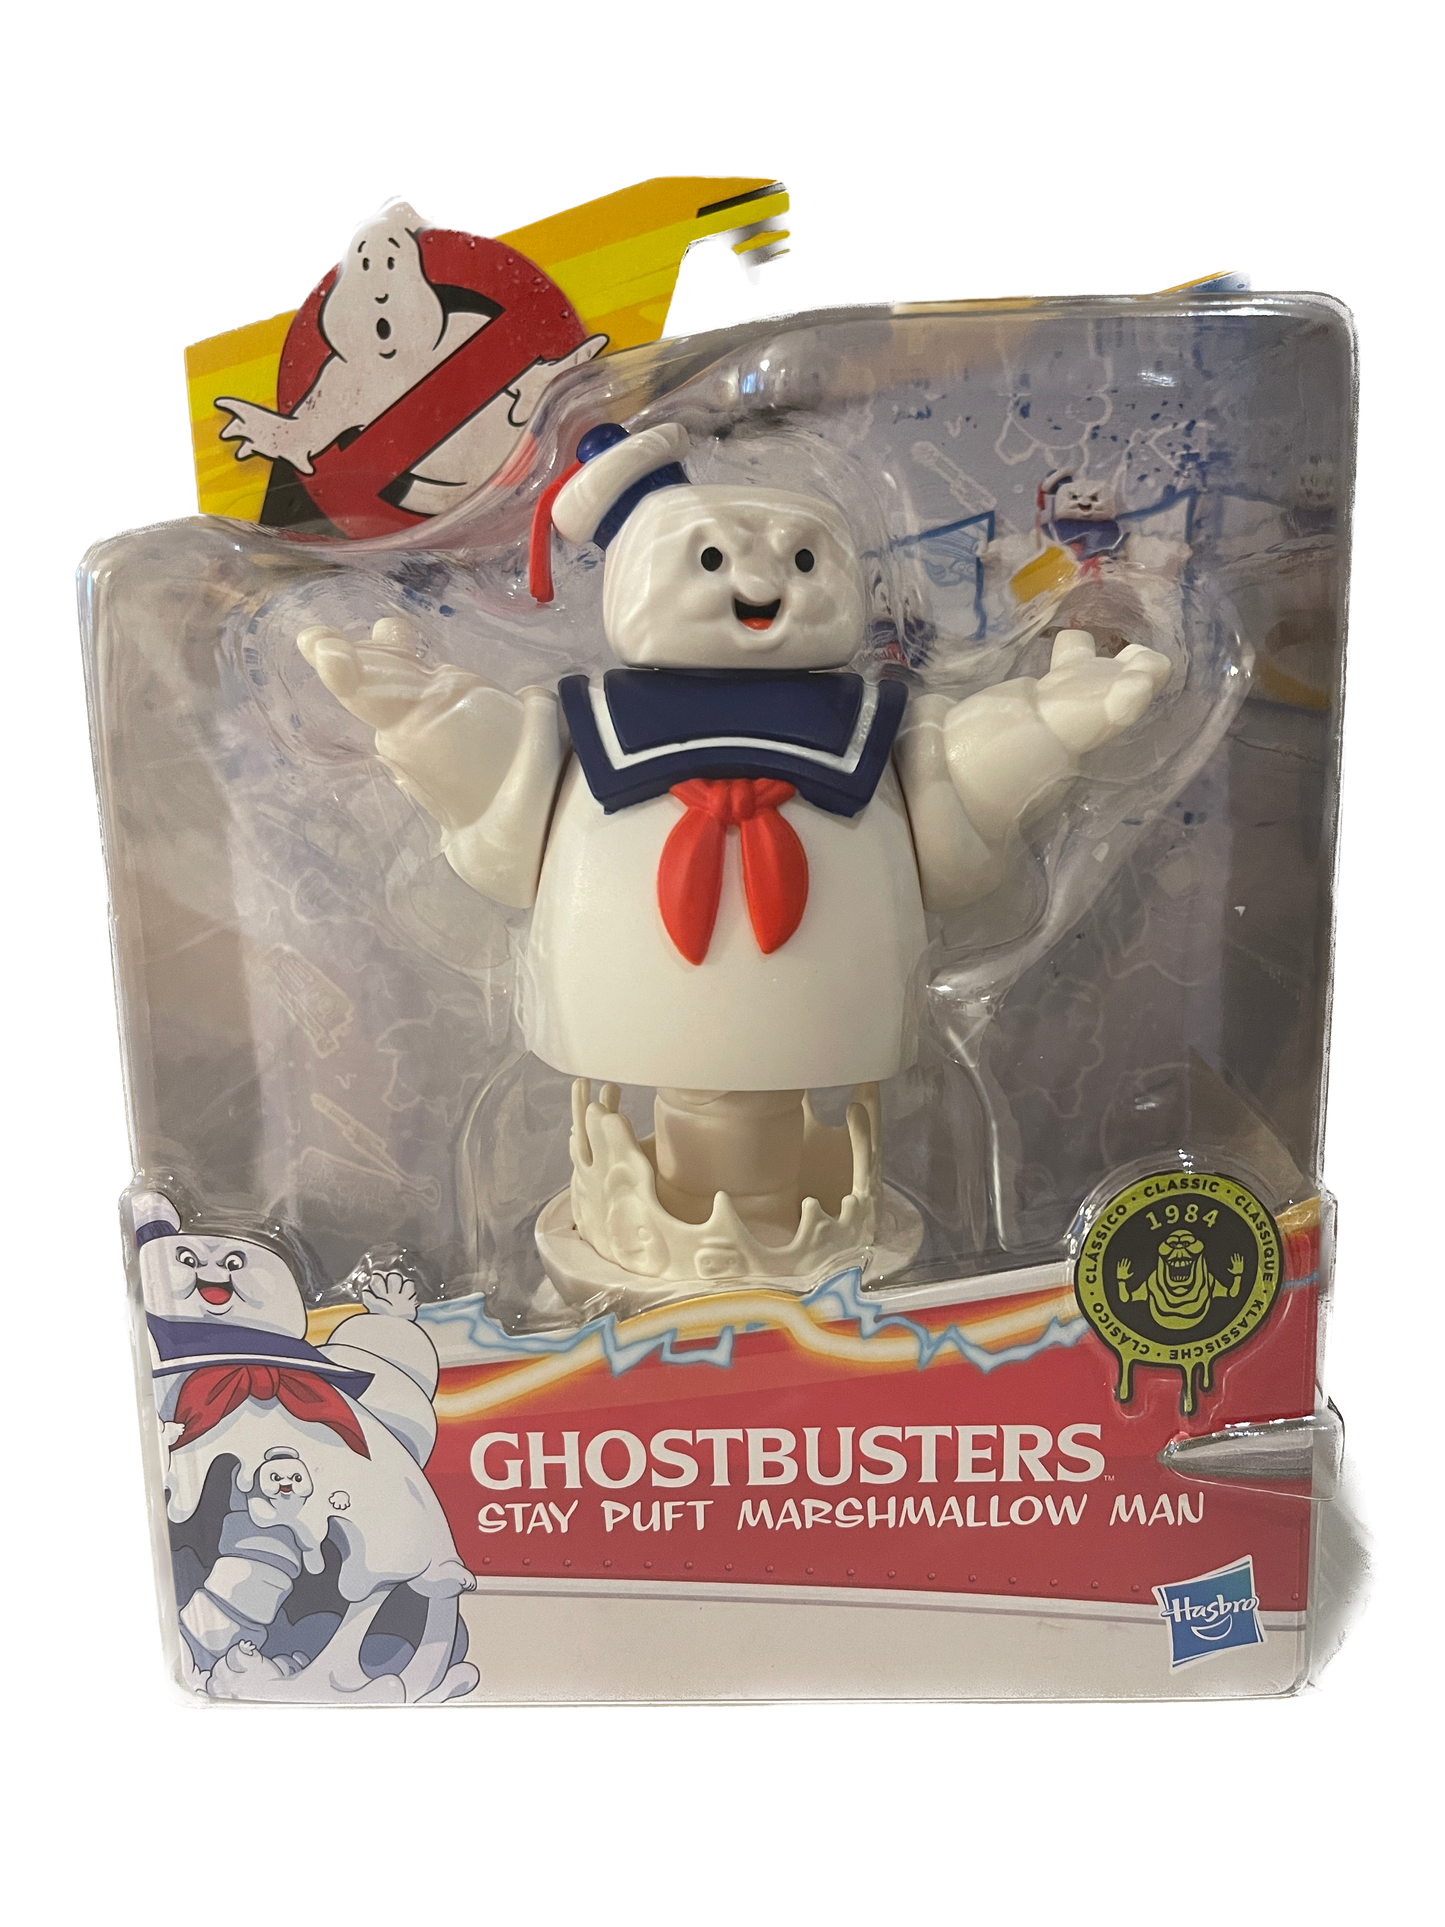 Ghostbusters Classic 1984 / Afterlife Actionfiguren: Stantz, Slimer, Muncher uvm.